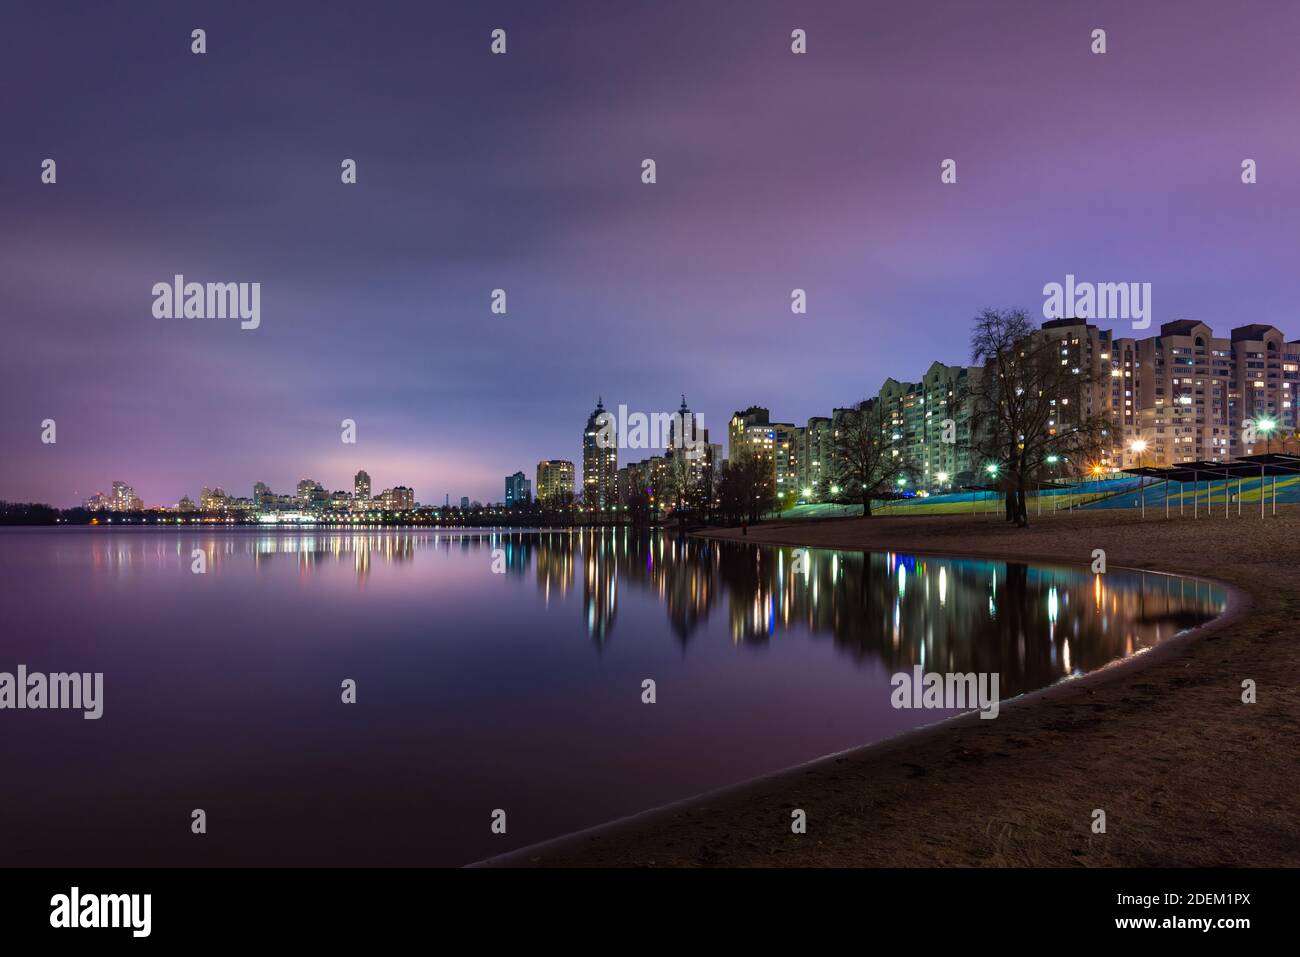 Vista notturna degli edifici moderni nel quartiere Obolon di Kiev, Ucraina, vicino al fiume Dnieper, le luci si riflettono sulle acque calme. Foto Stock